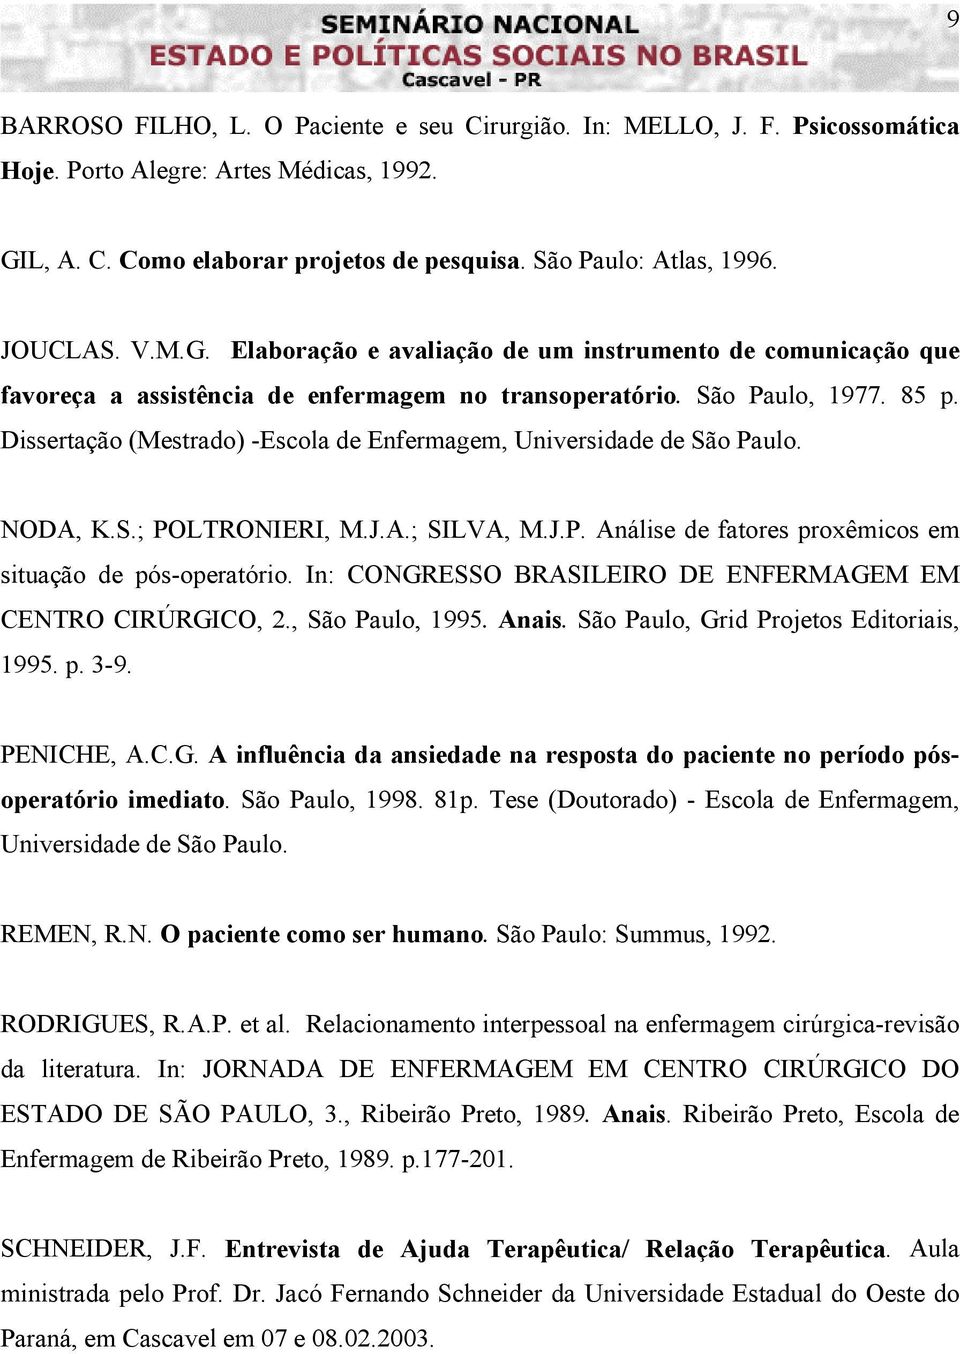 Dissertação (Mestrado) -Escola de Enfermagem, Universidade de São Paulo. NODA, K.S.; POLTRONIERI, M.J.A.; SILVA, M.J.P. Análise de fatores proxêmicos em situação de pós-operatório.